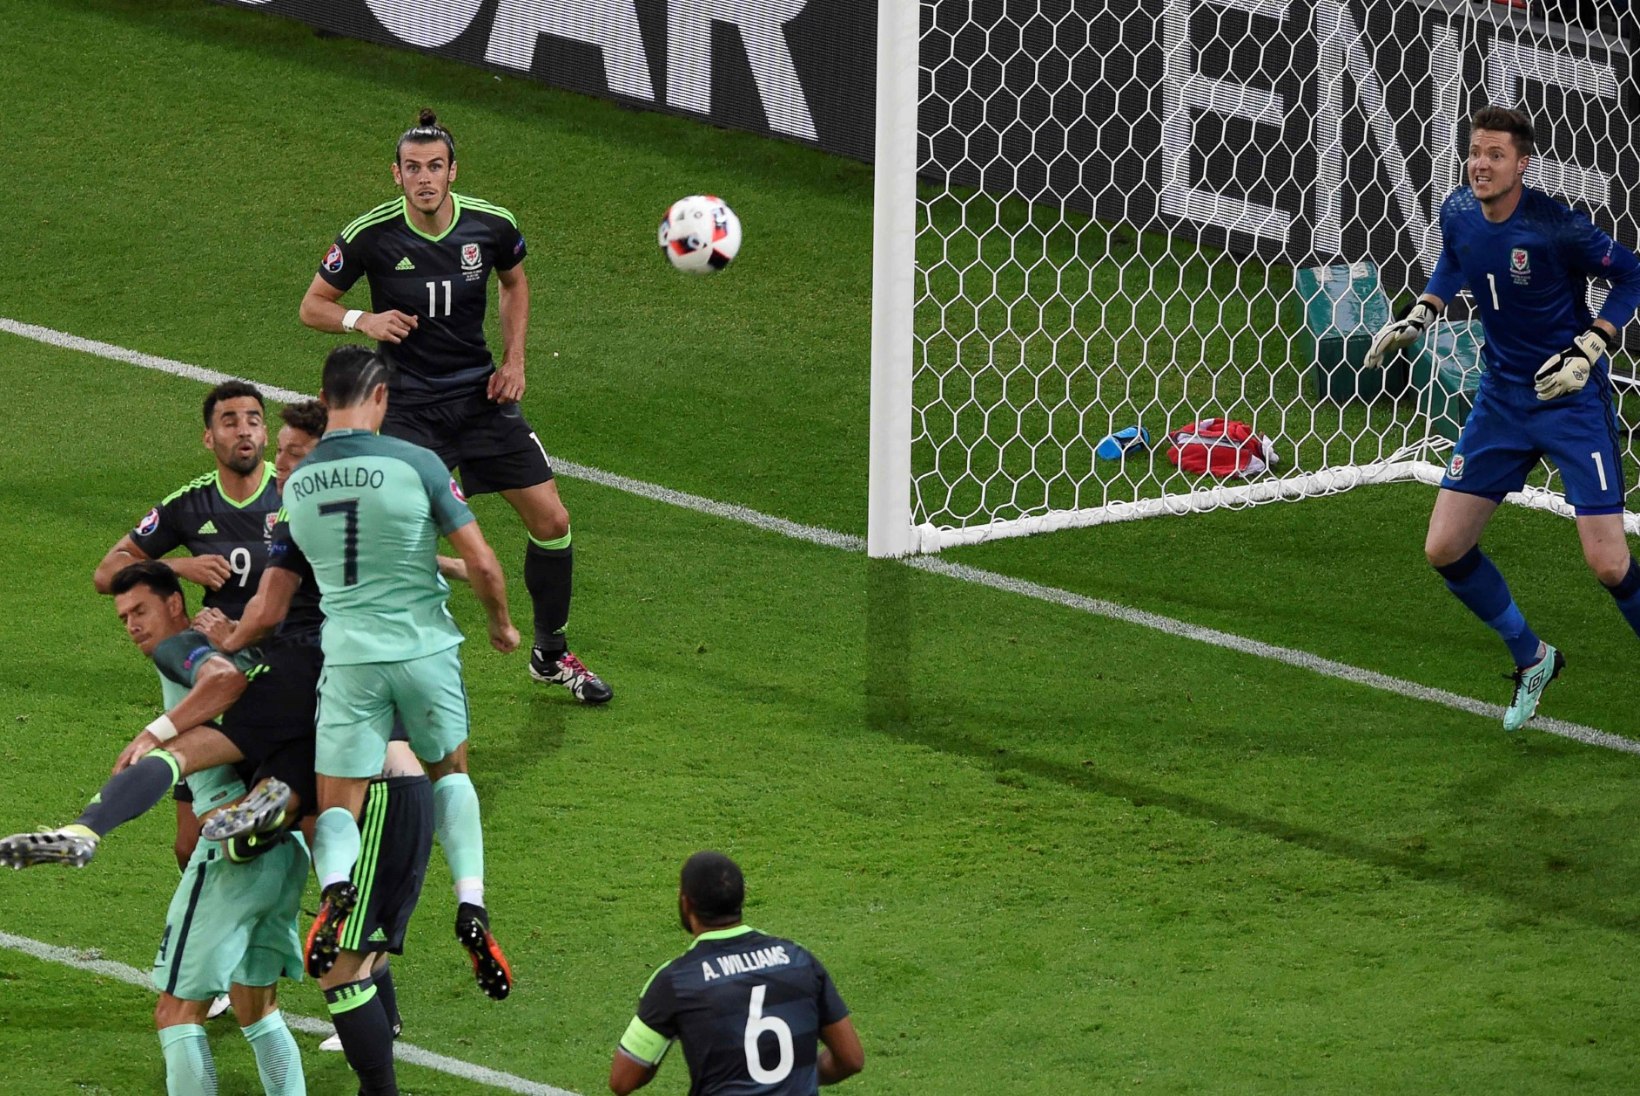 ÕHTULEHT LYONIS | Ronaldo lõi padrunid letti, kõmmutas Walesi auklikuks ja Portugali finaali!